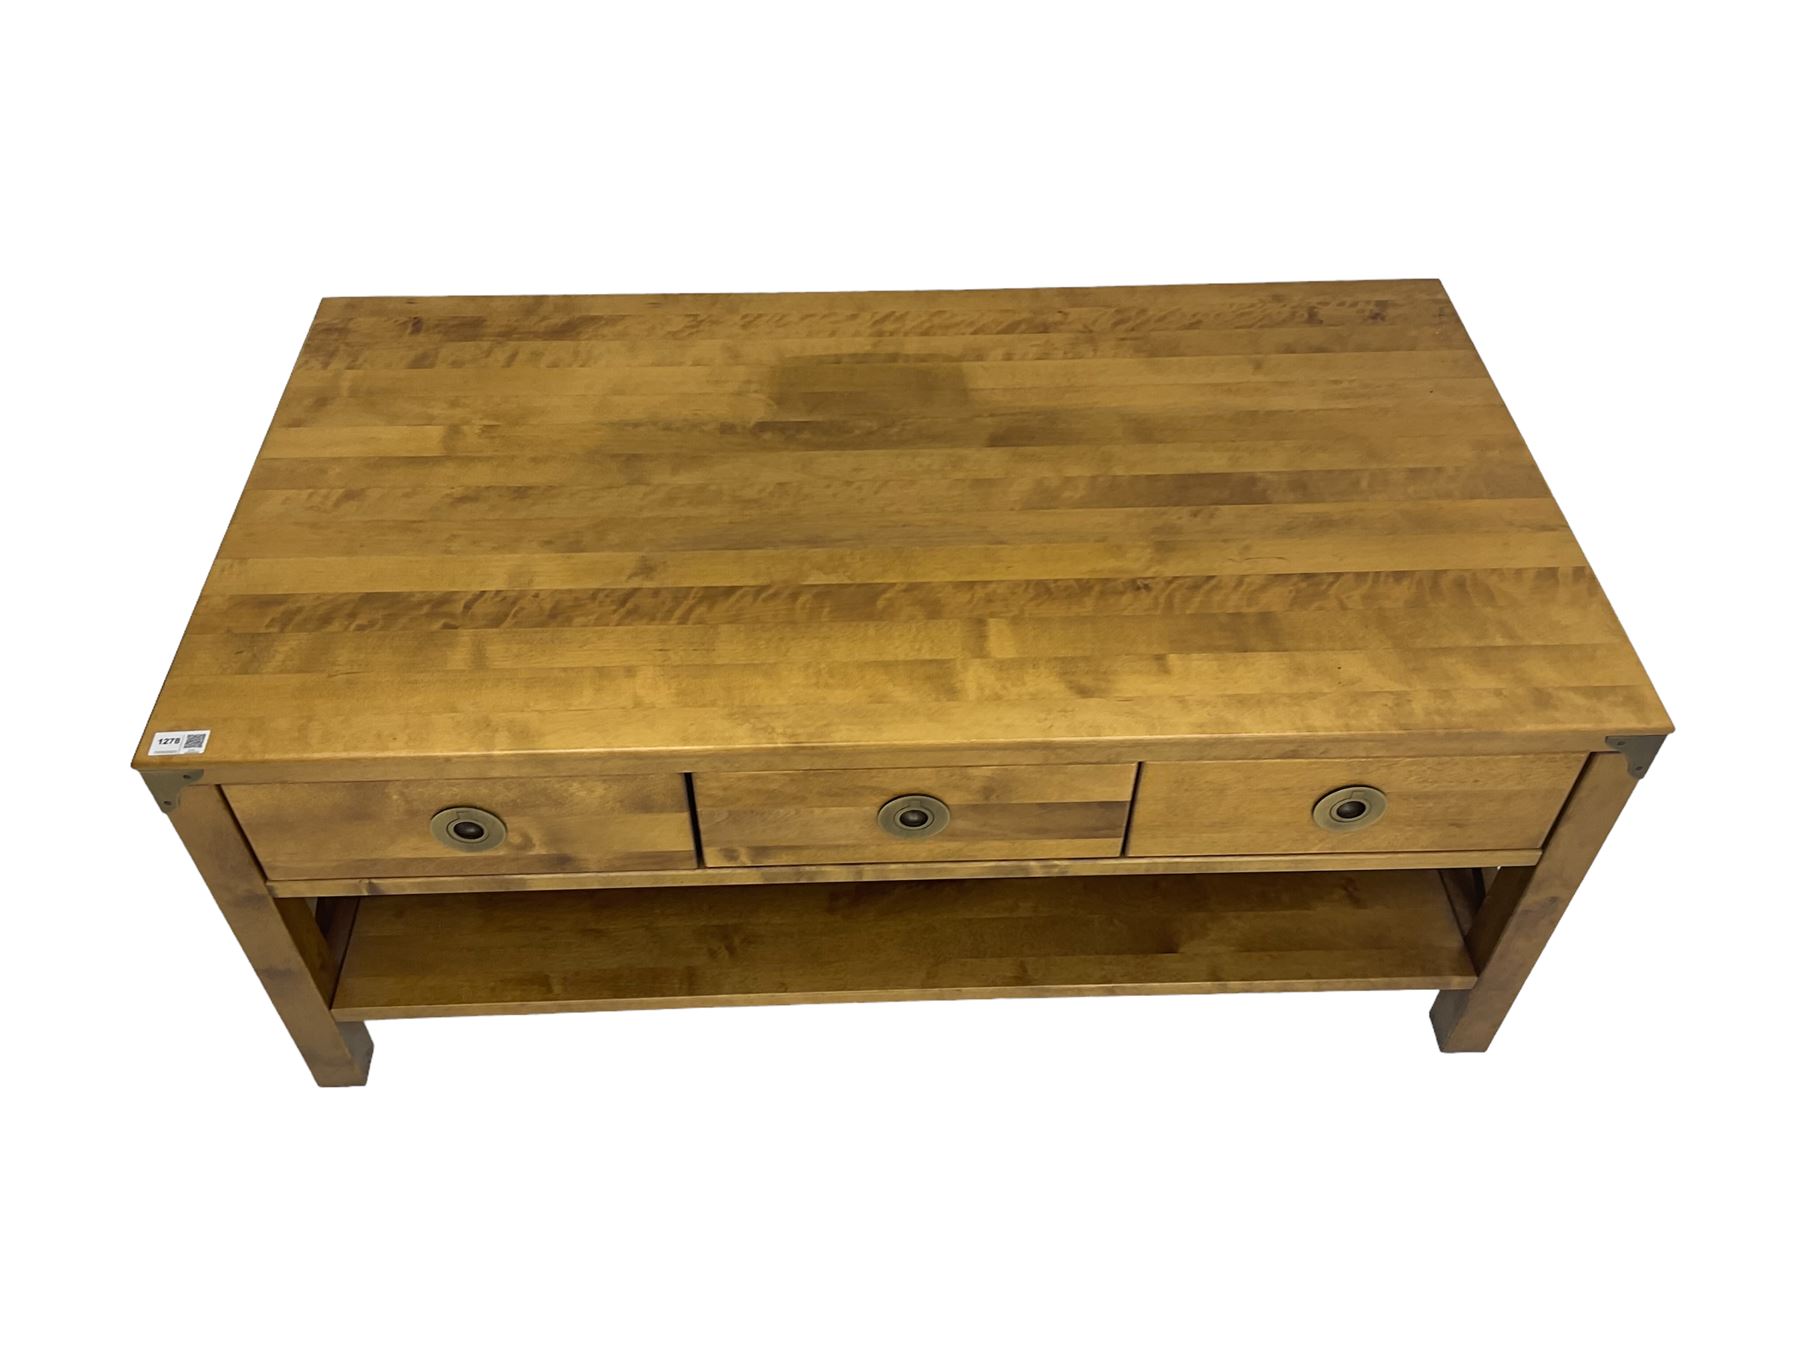 Rectangular hardwood coffee table - Image 5 of 6